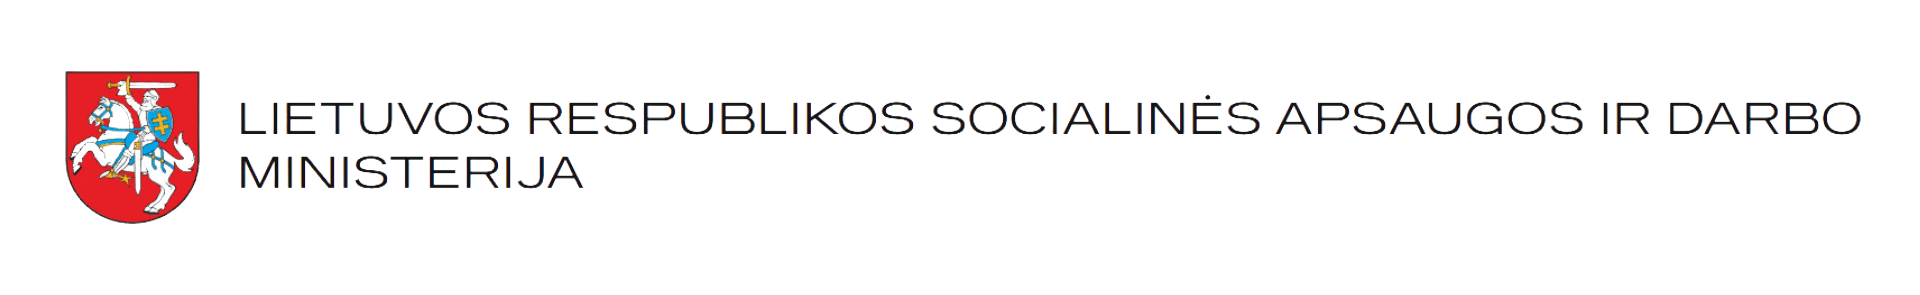 Socialinės apsaugos ir darbo ministerijos logotipas